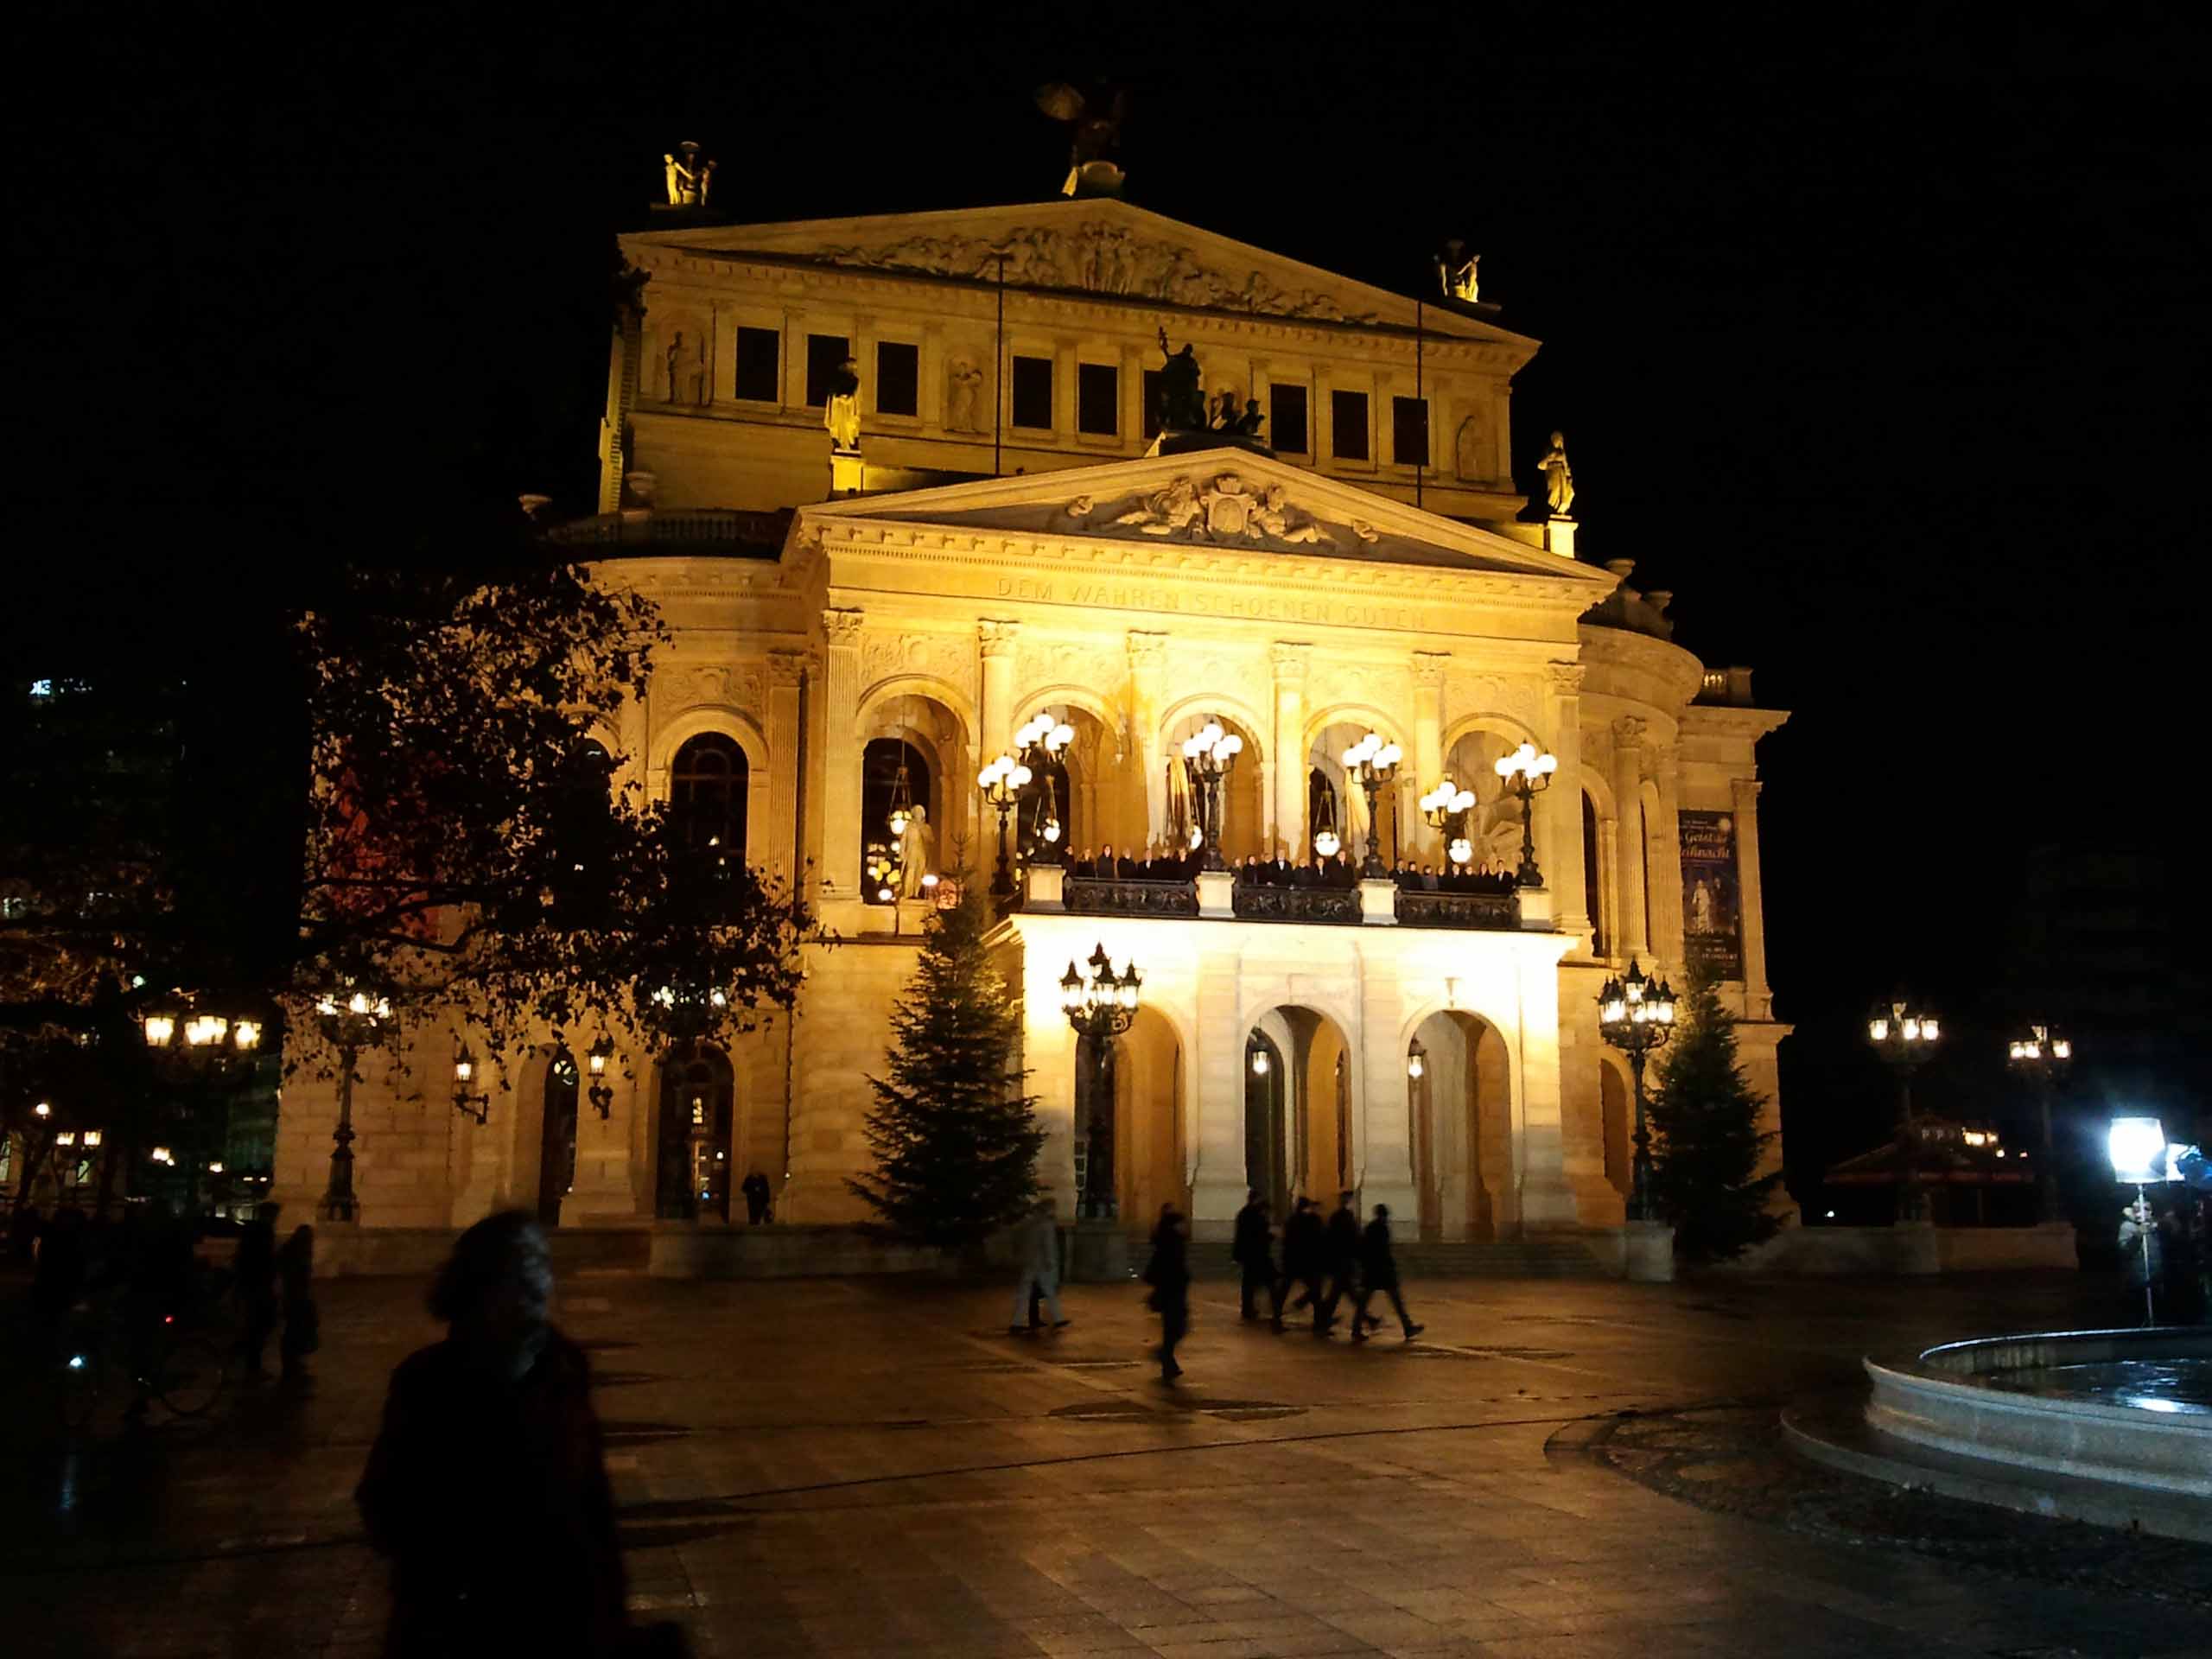 Alte Oper in Frankfurt am Main bei Nacht - kurz vor heilig Abend mit festlicher Beleuchtung und Weihnachtschor.